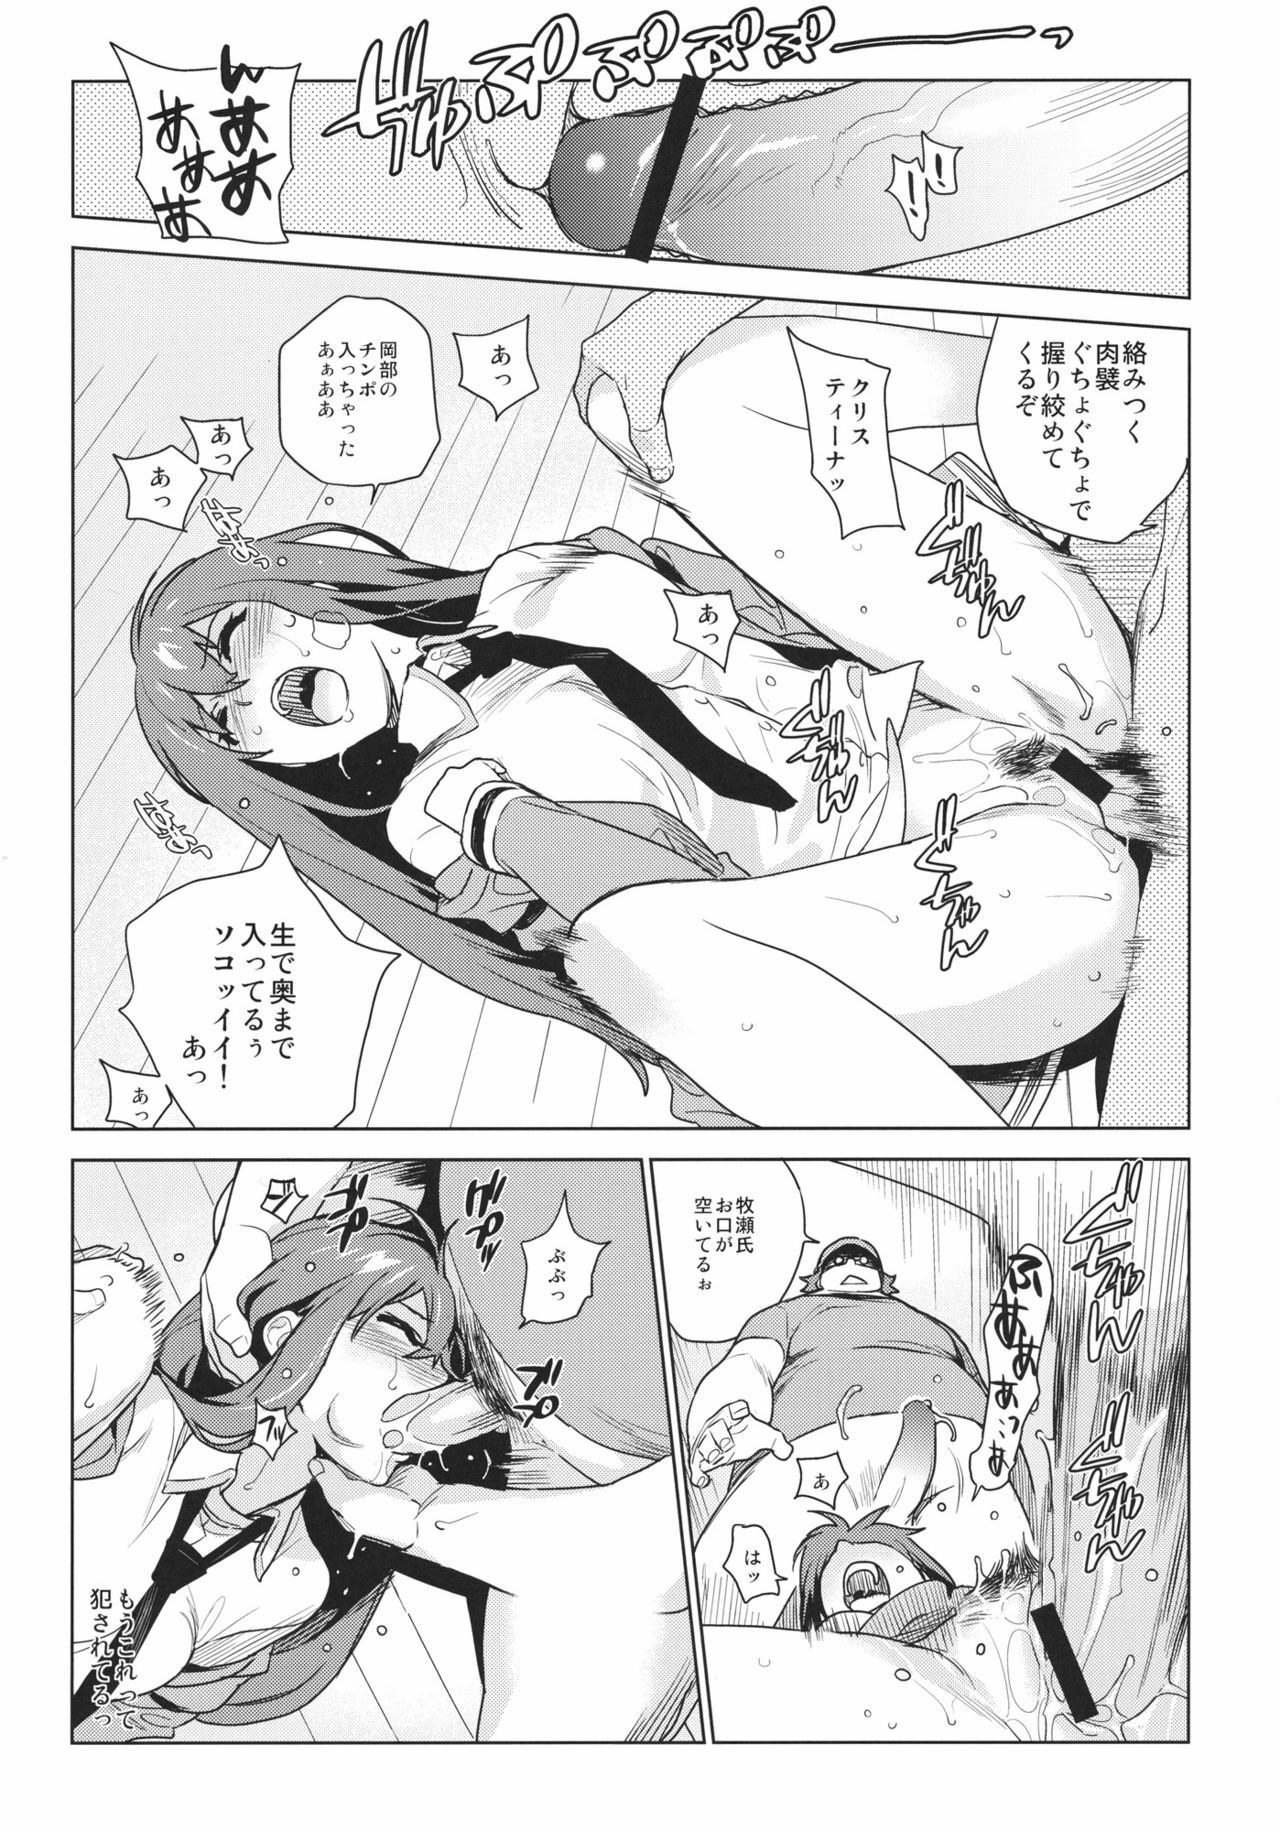 [enuma elish (Yukimi)] OCD (Steins;Gate) page 8 full